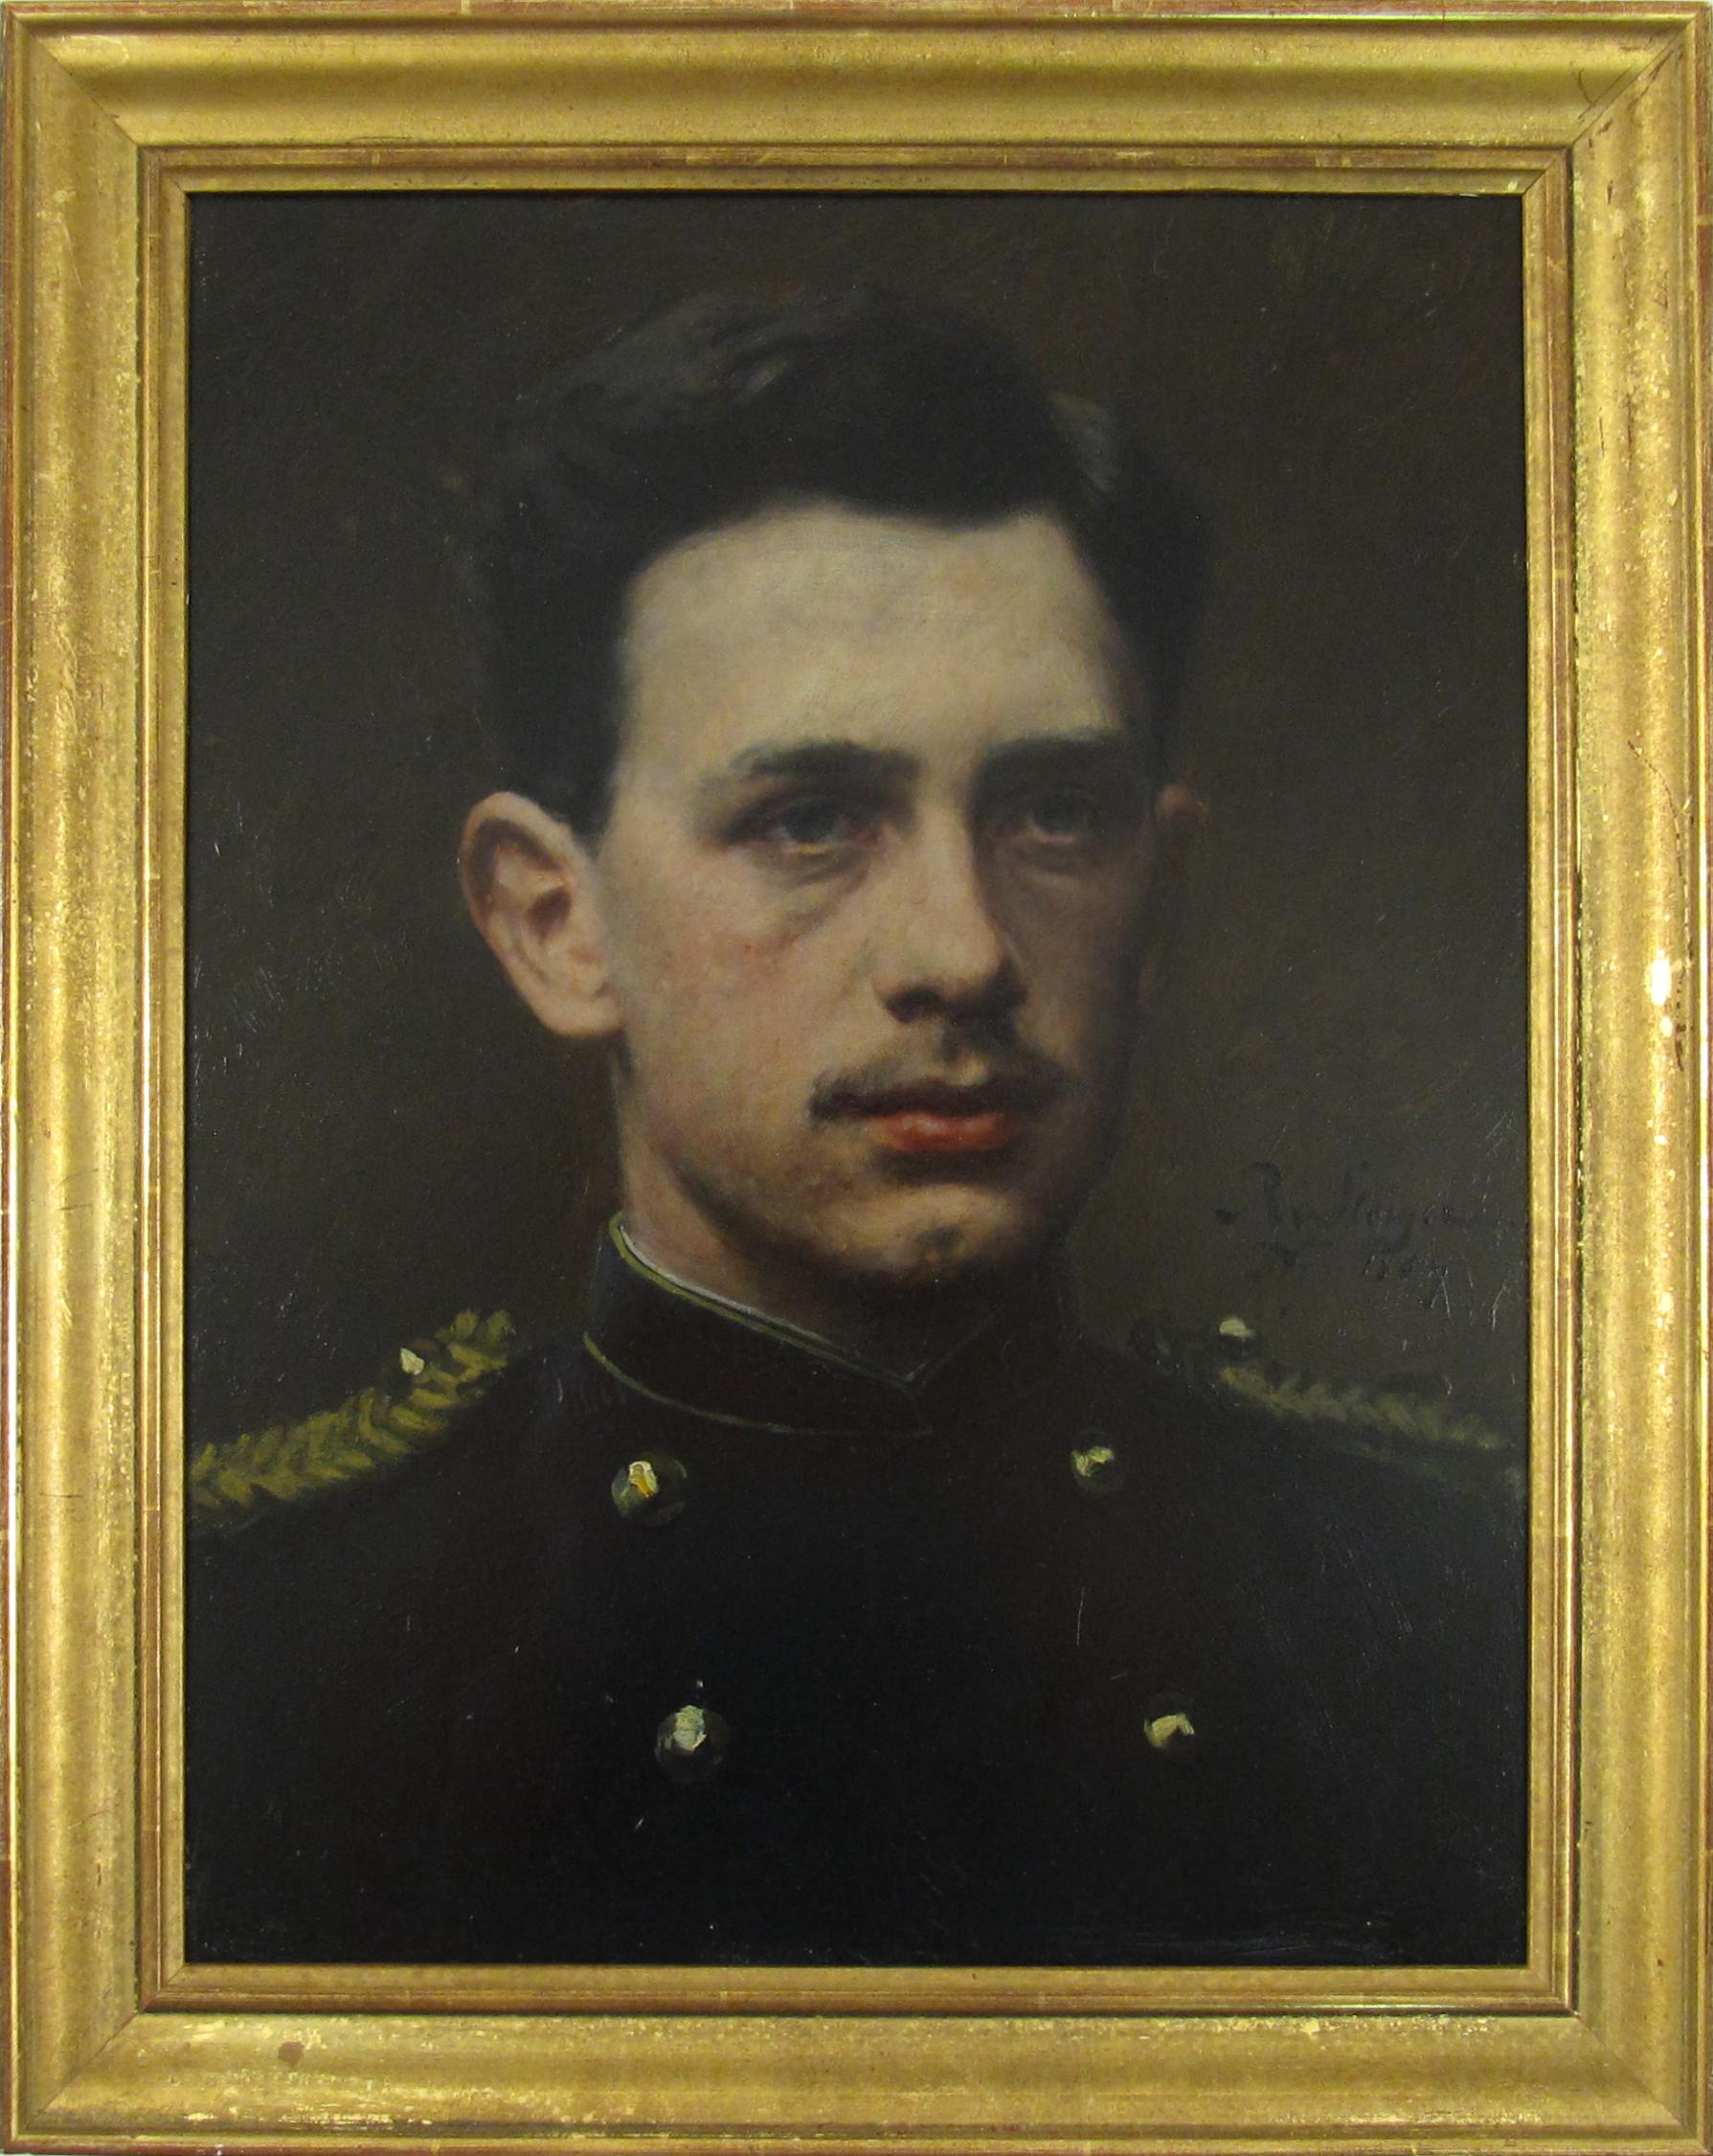 Johann Ludwig Robert von Steiger Portrait Painting – Robert von Steiger (1856-1941) Porträt des niederländischen Offiziers A. v. Steiger 1884 Holland